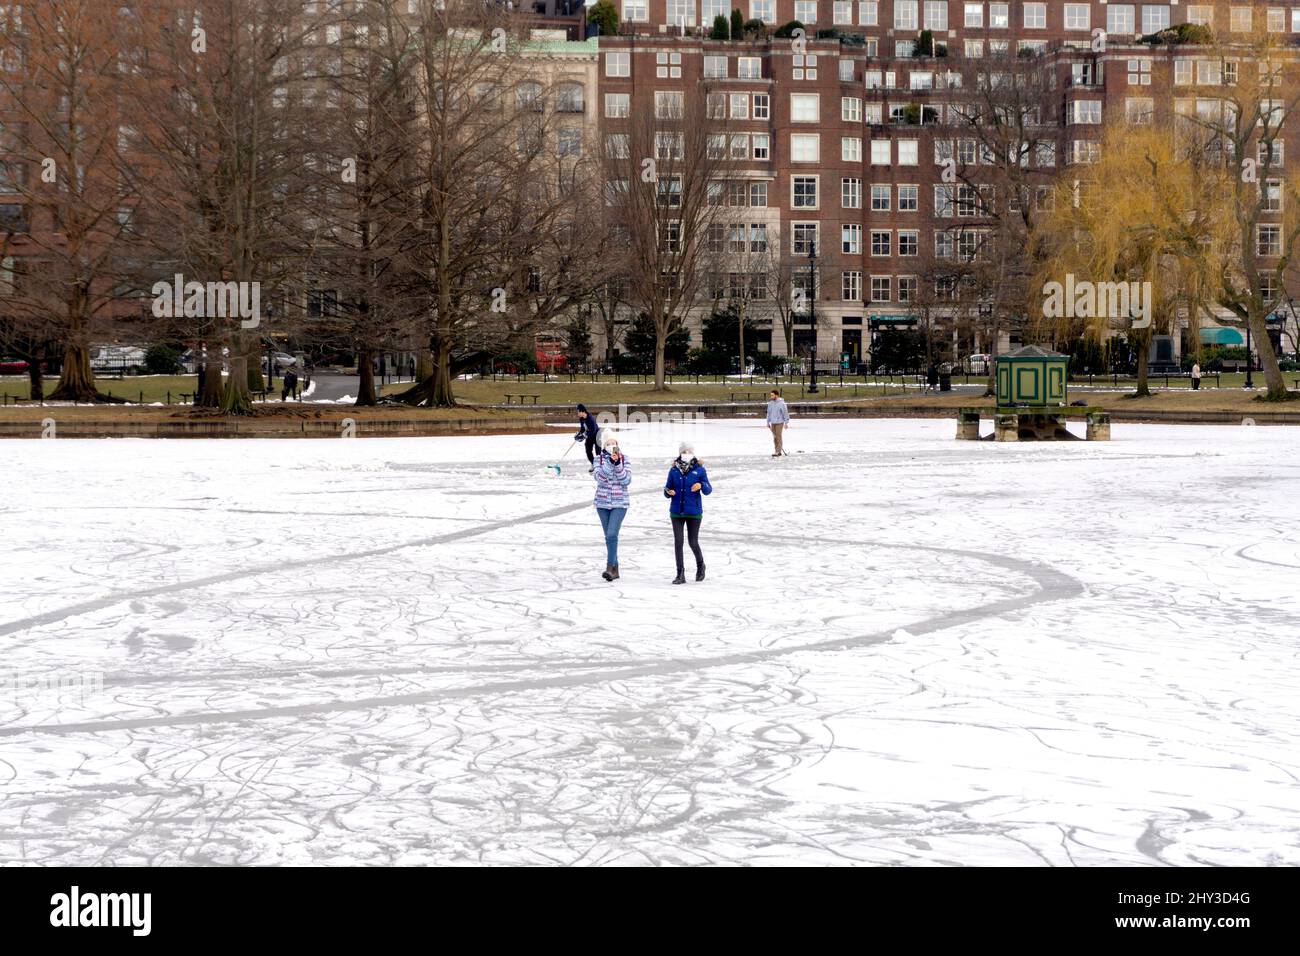 Menschen, die im Winter auf dem gefrorenen Boston Public Garden Teich spazieren und skaten Stockfoto